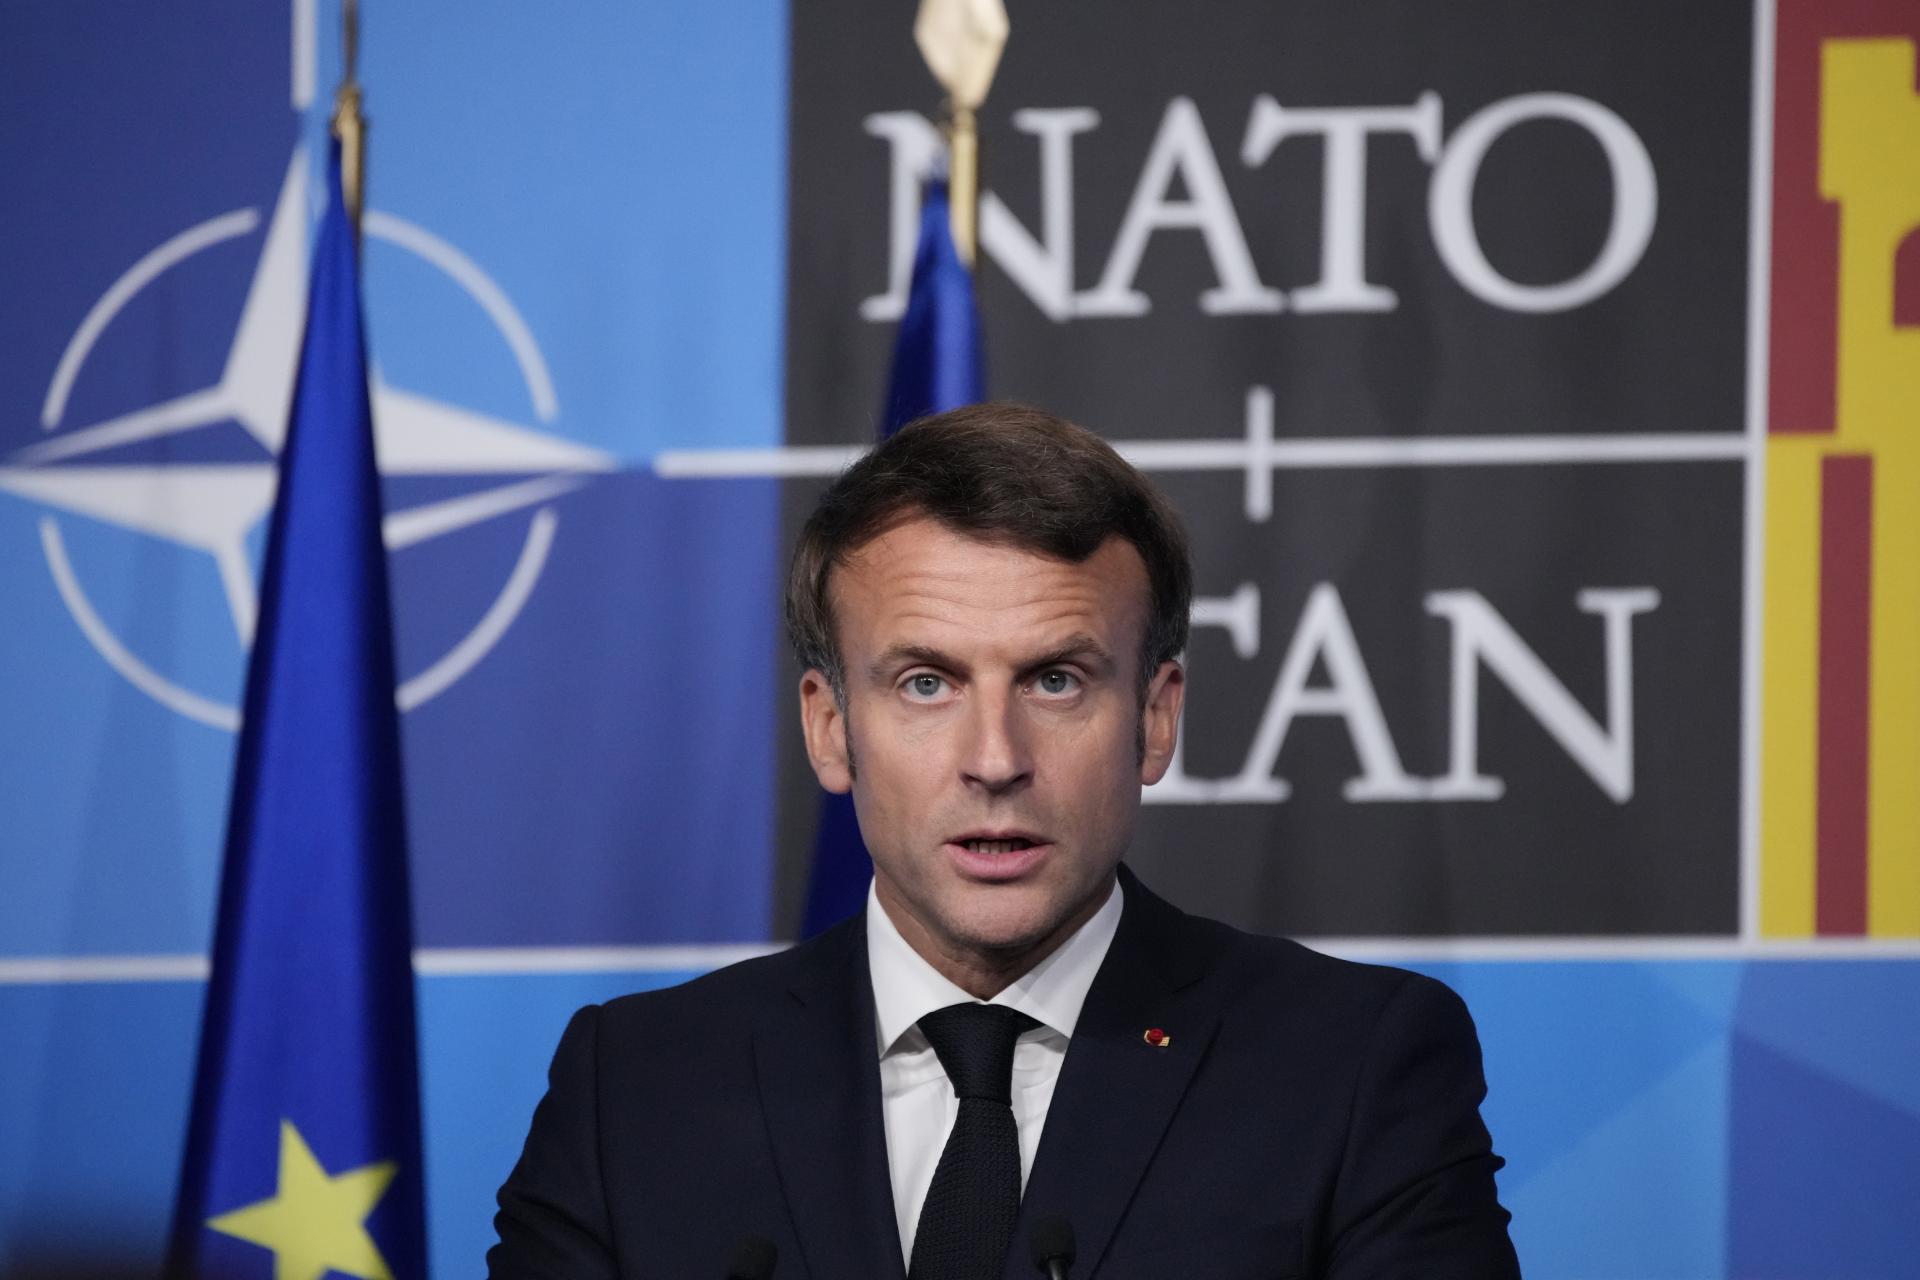 Les Français étaient gênés.  Un inconnu barbu a volé des documents top secrets de l’OTAN à Paris